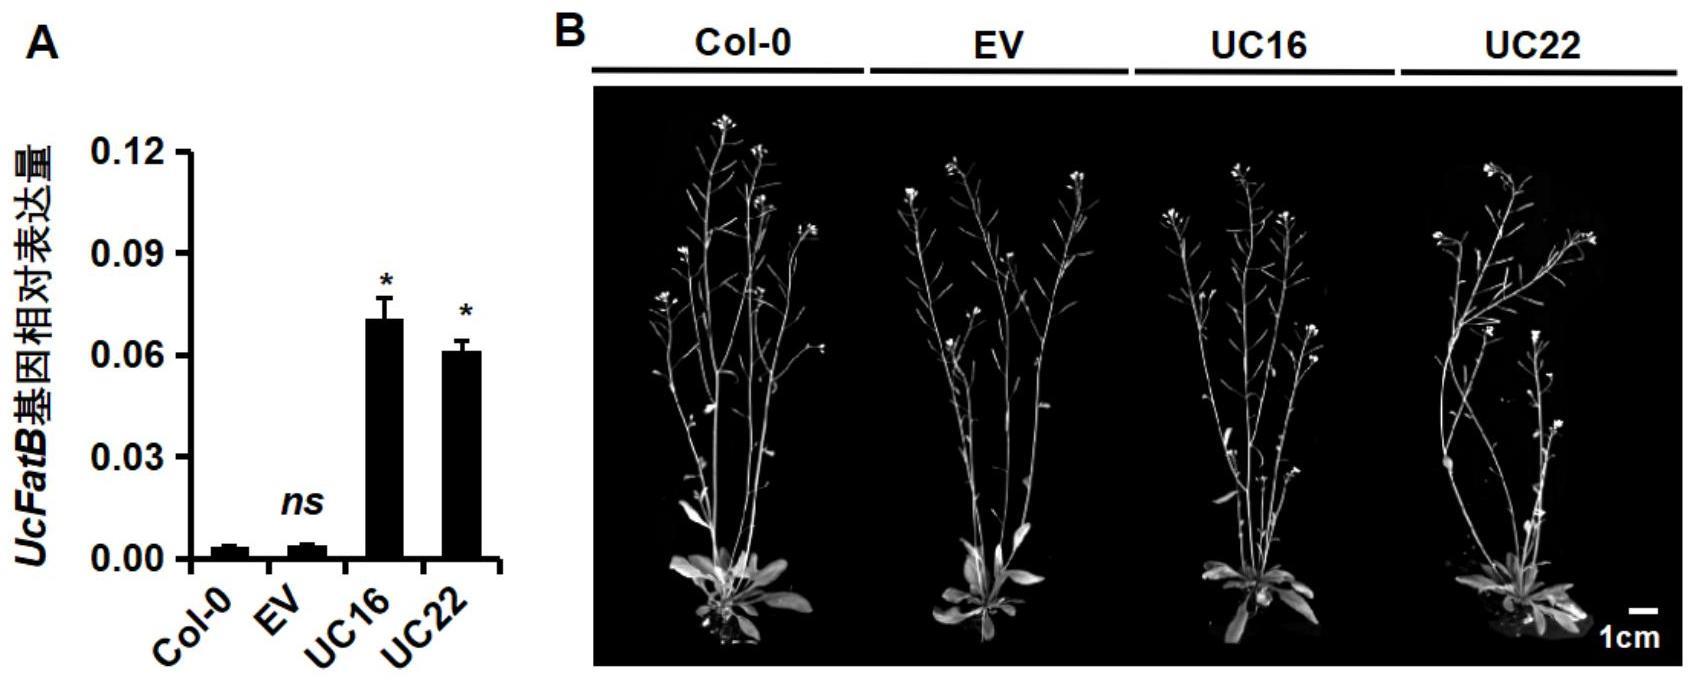 加州月桂树UcFatB基因的DNA密码子优化序列在改善植物抗旱上的应用